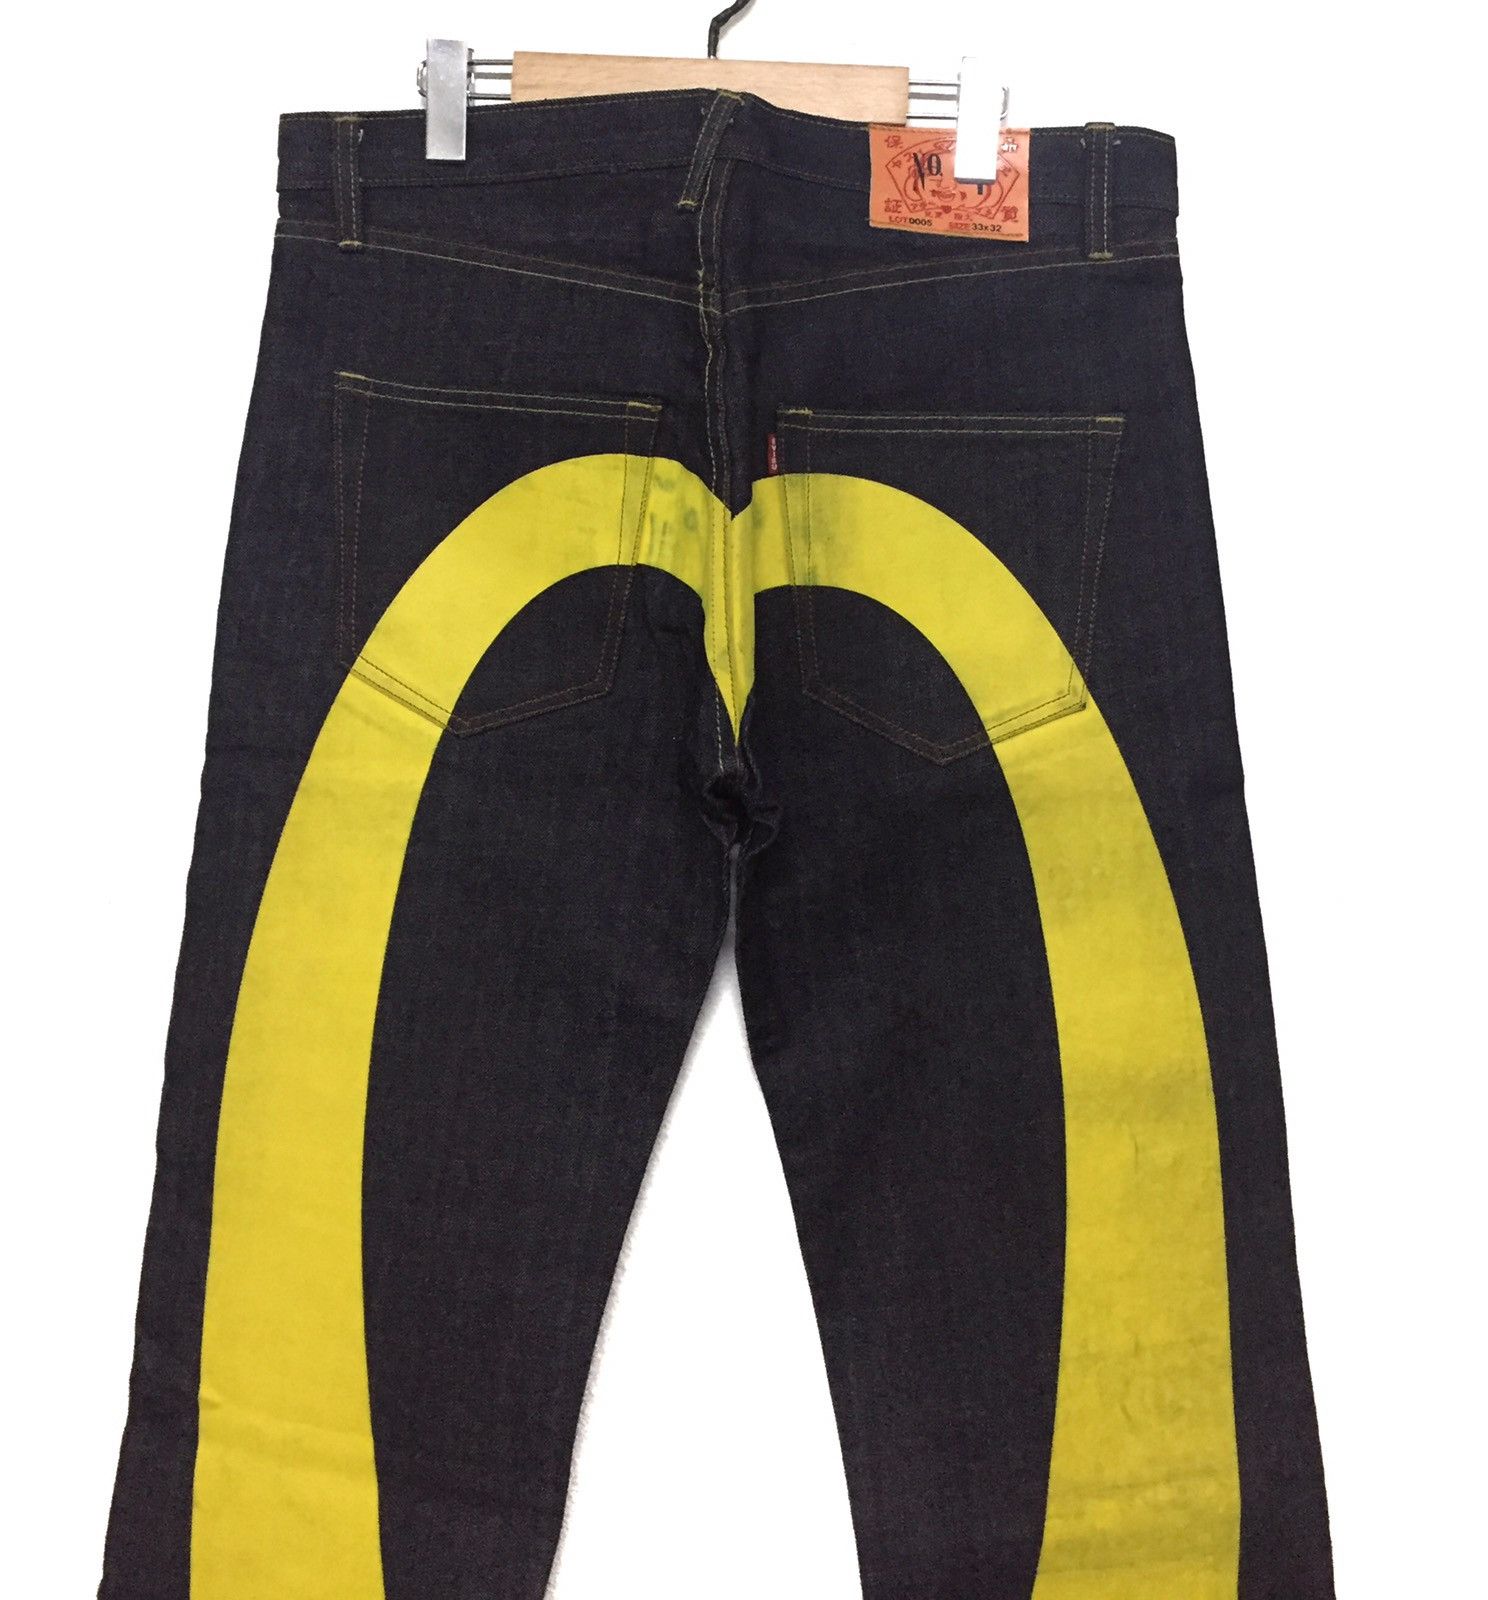 Evisu Evisu Yellow Daicock Jeans Big Logo Size US 33 - 2 Preview